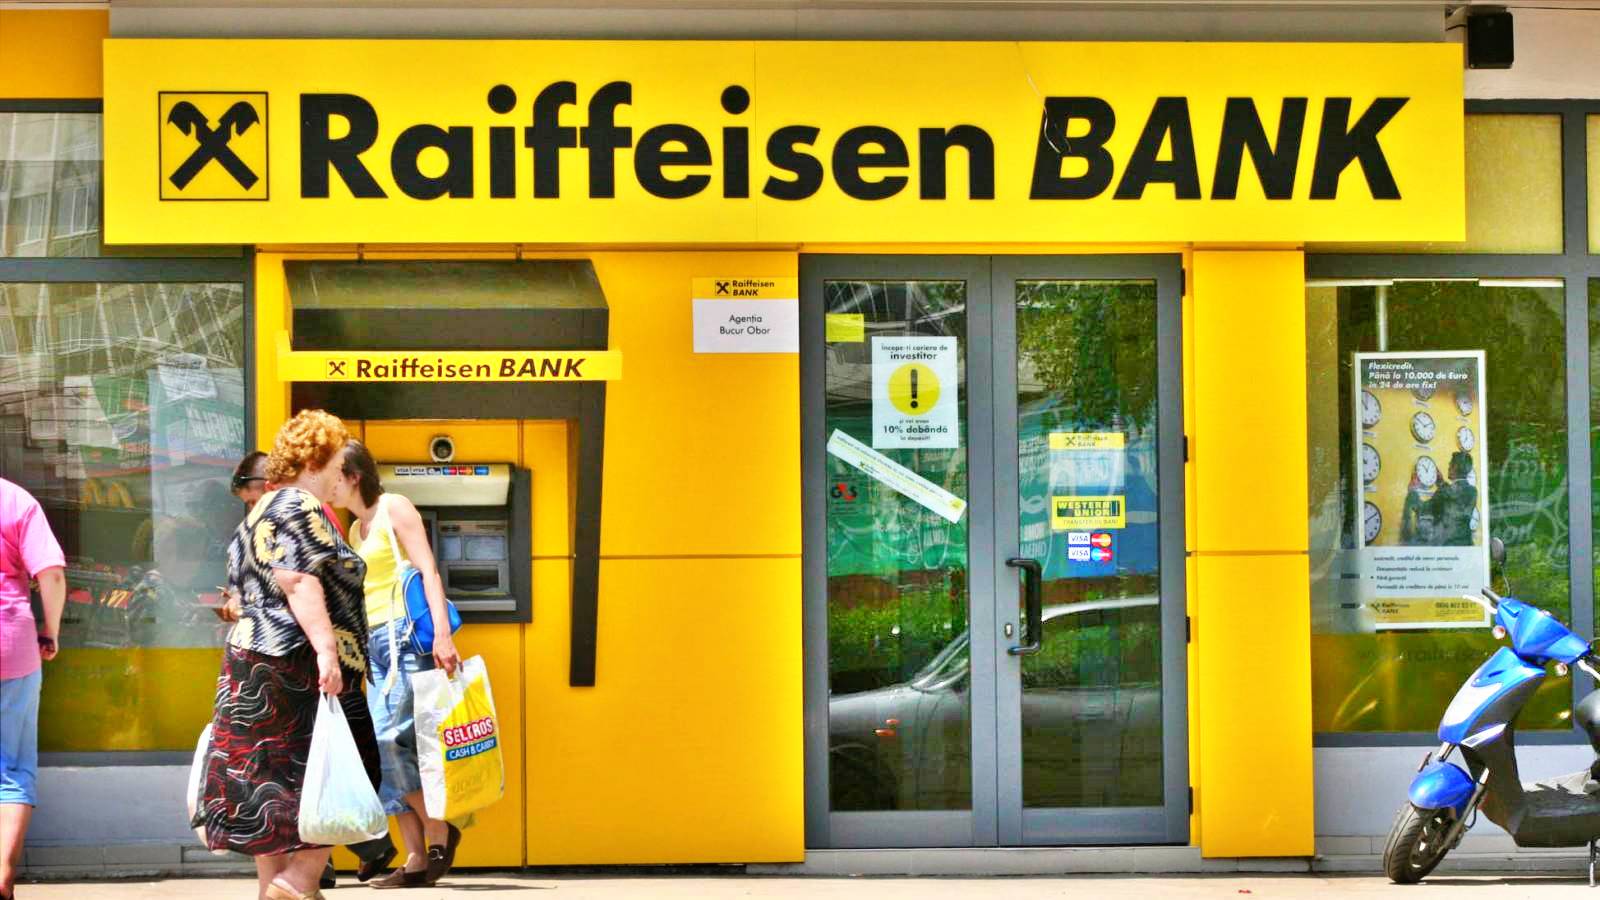 Raiffeisen Bank detection